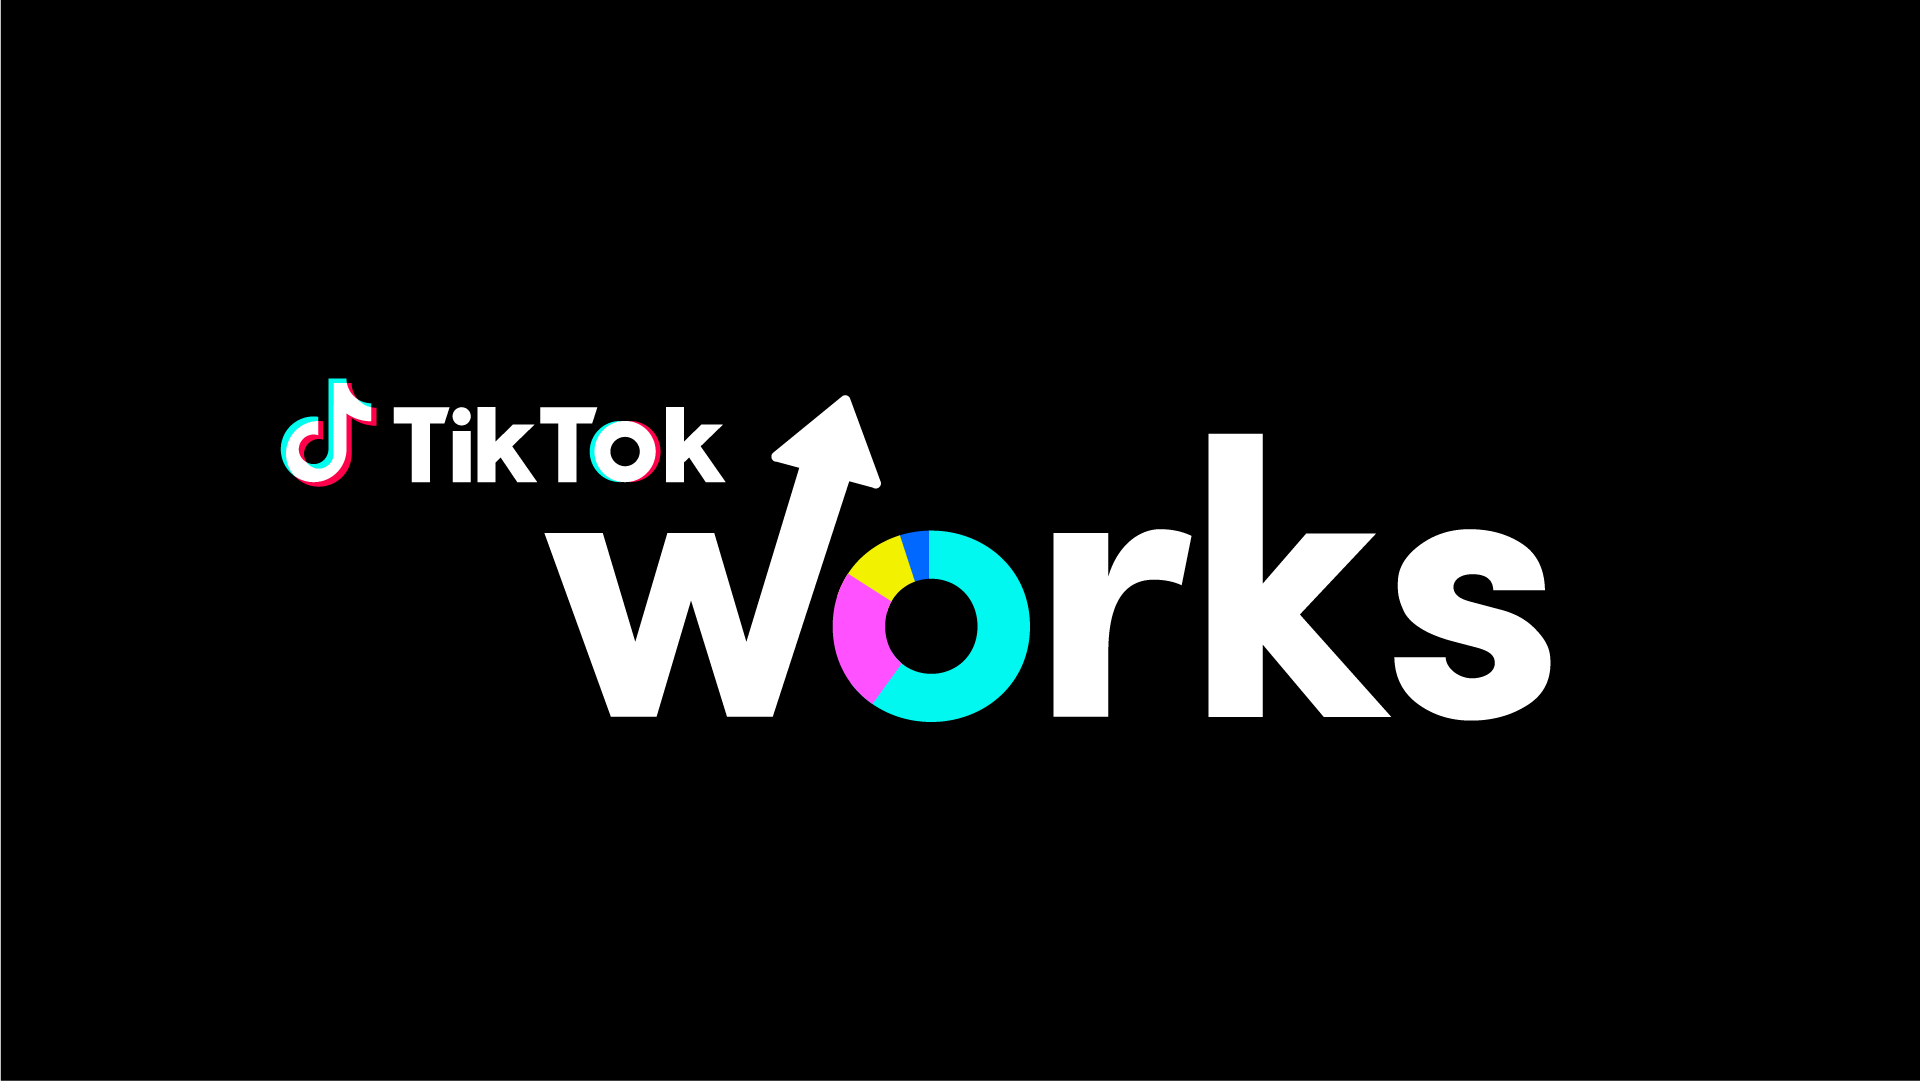 Shorts lança recurso de remixar vídeos similar ao TikTok - TecMundo